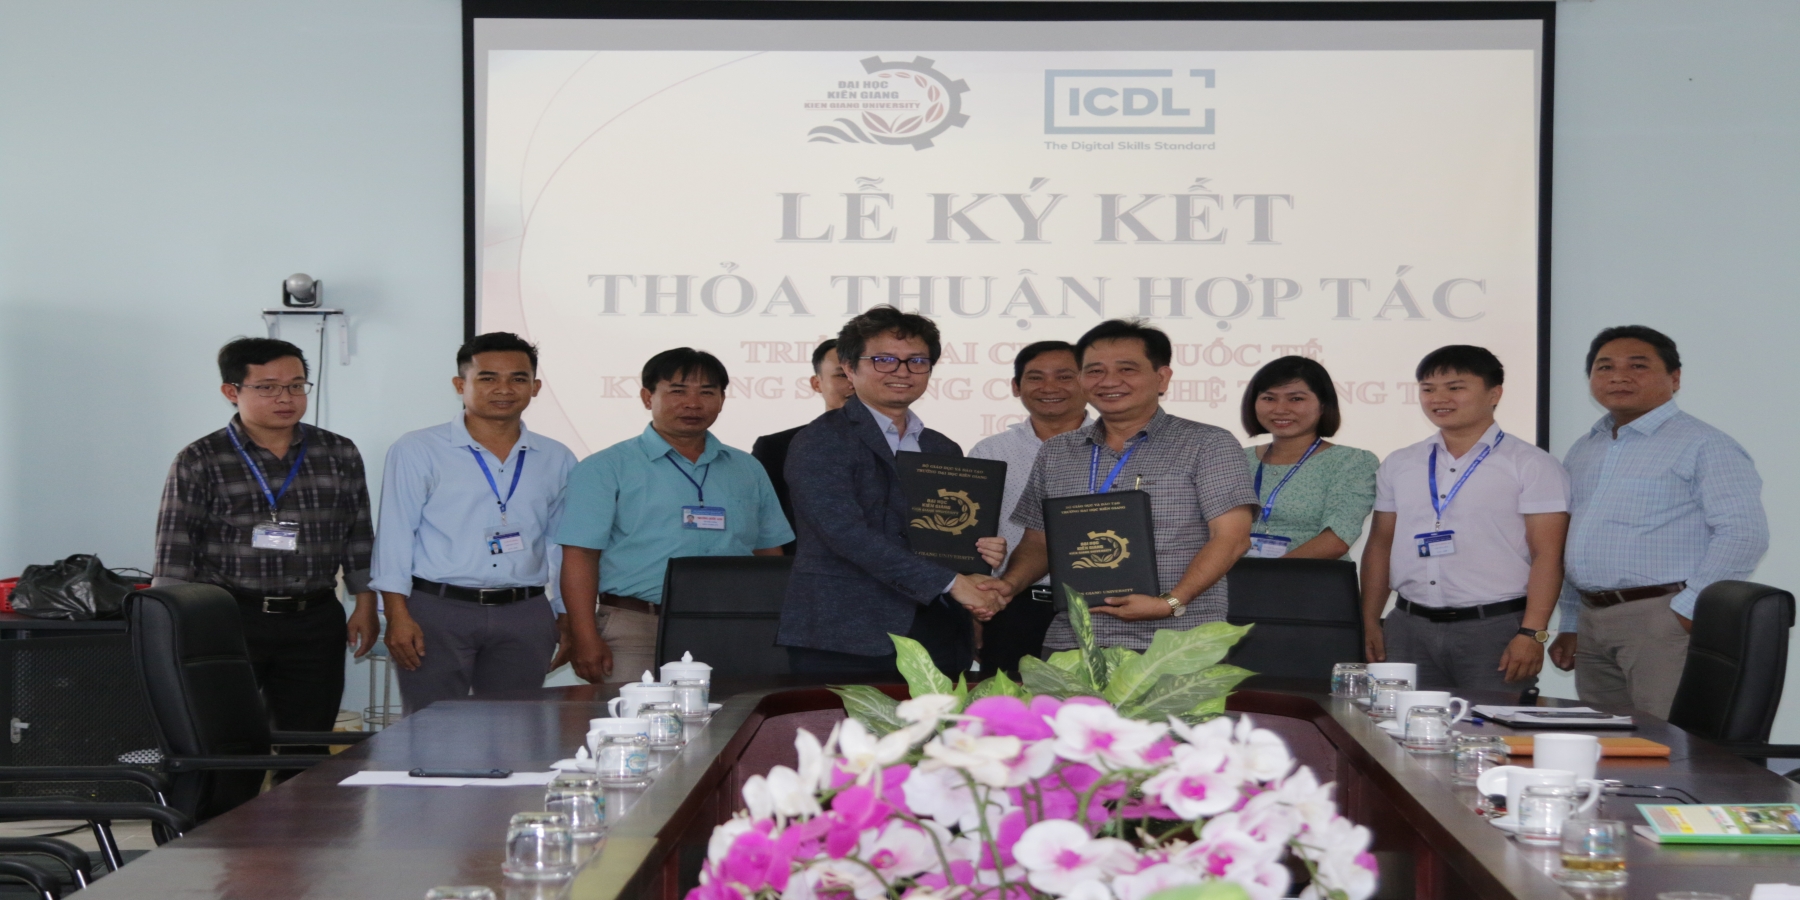 Trường Đại học Kiên Giang và Công ty cổ phần ICDL Việt Nam ký kết thỏa thuận hợp tác triển khai chuẩn quốc tế kỹ năng sử dụng công nghệ thông tin ICDL